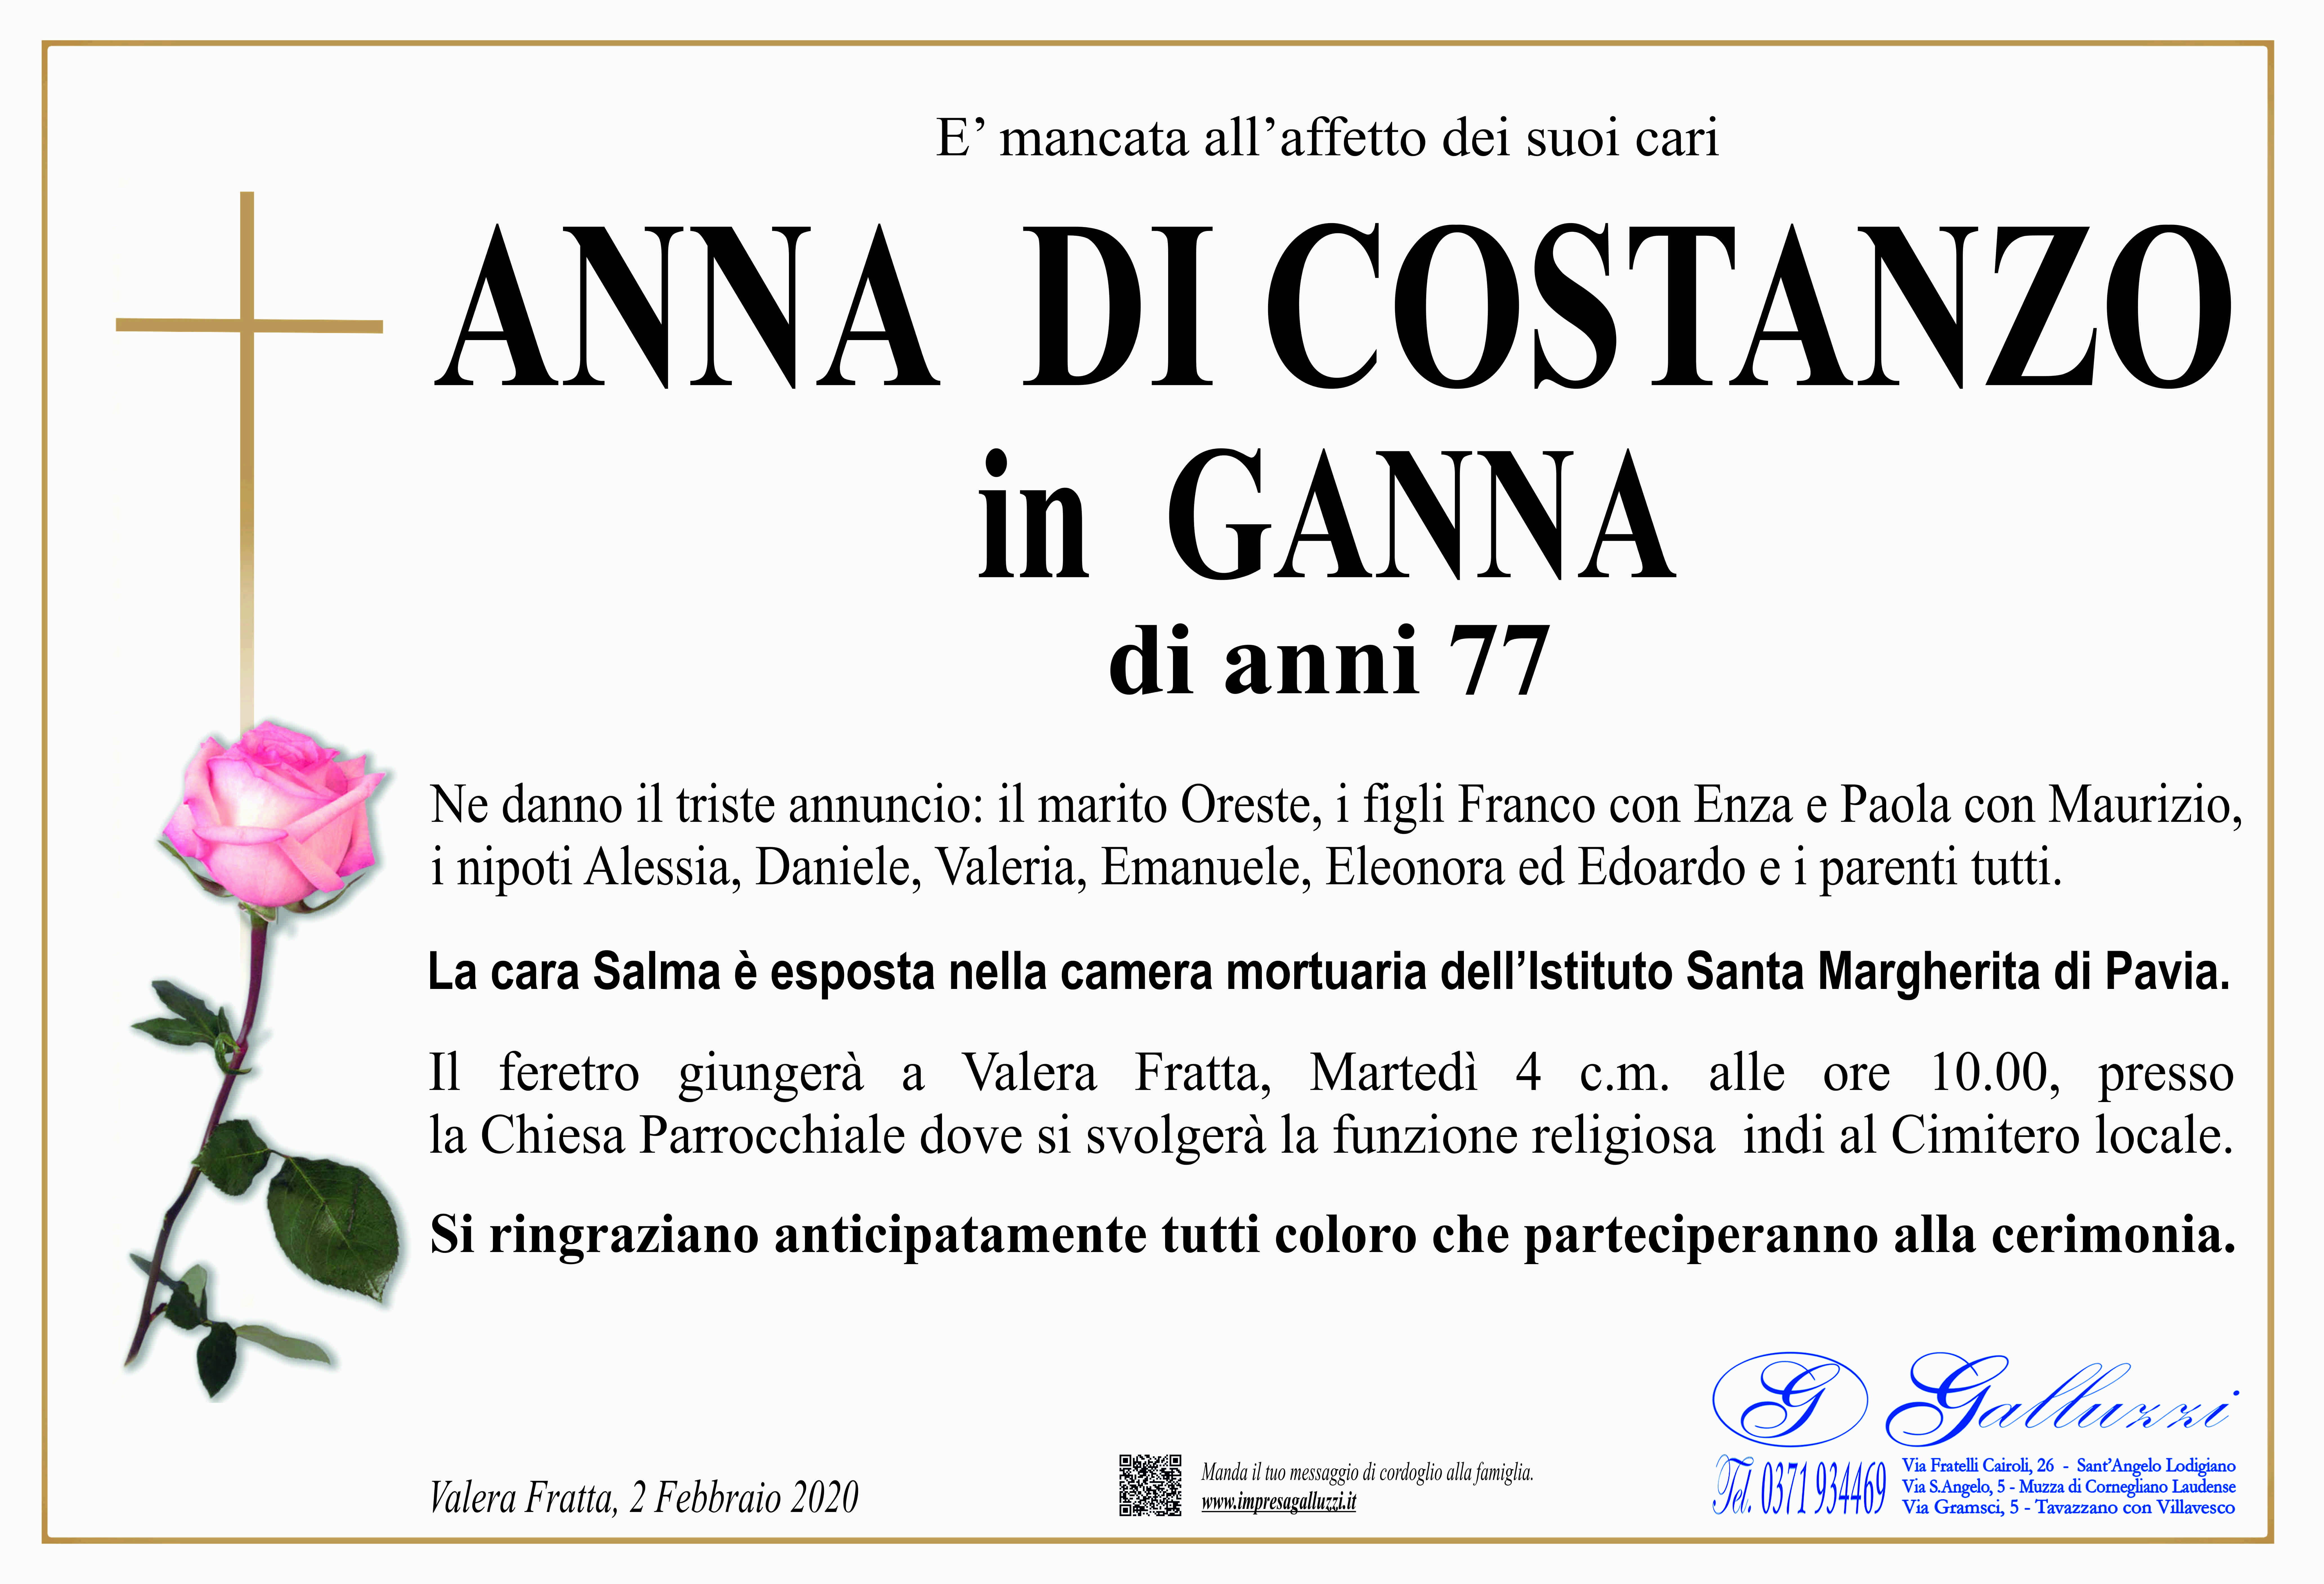 Anna Di Costanzo